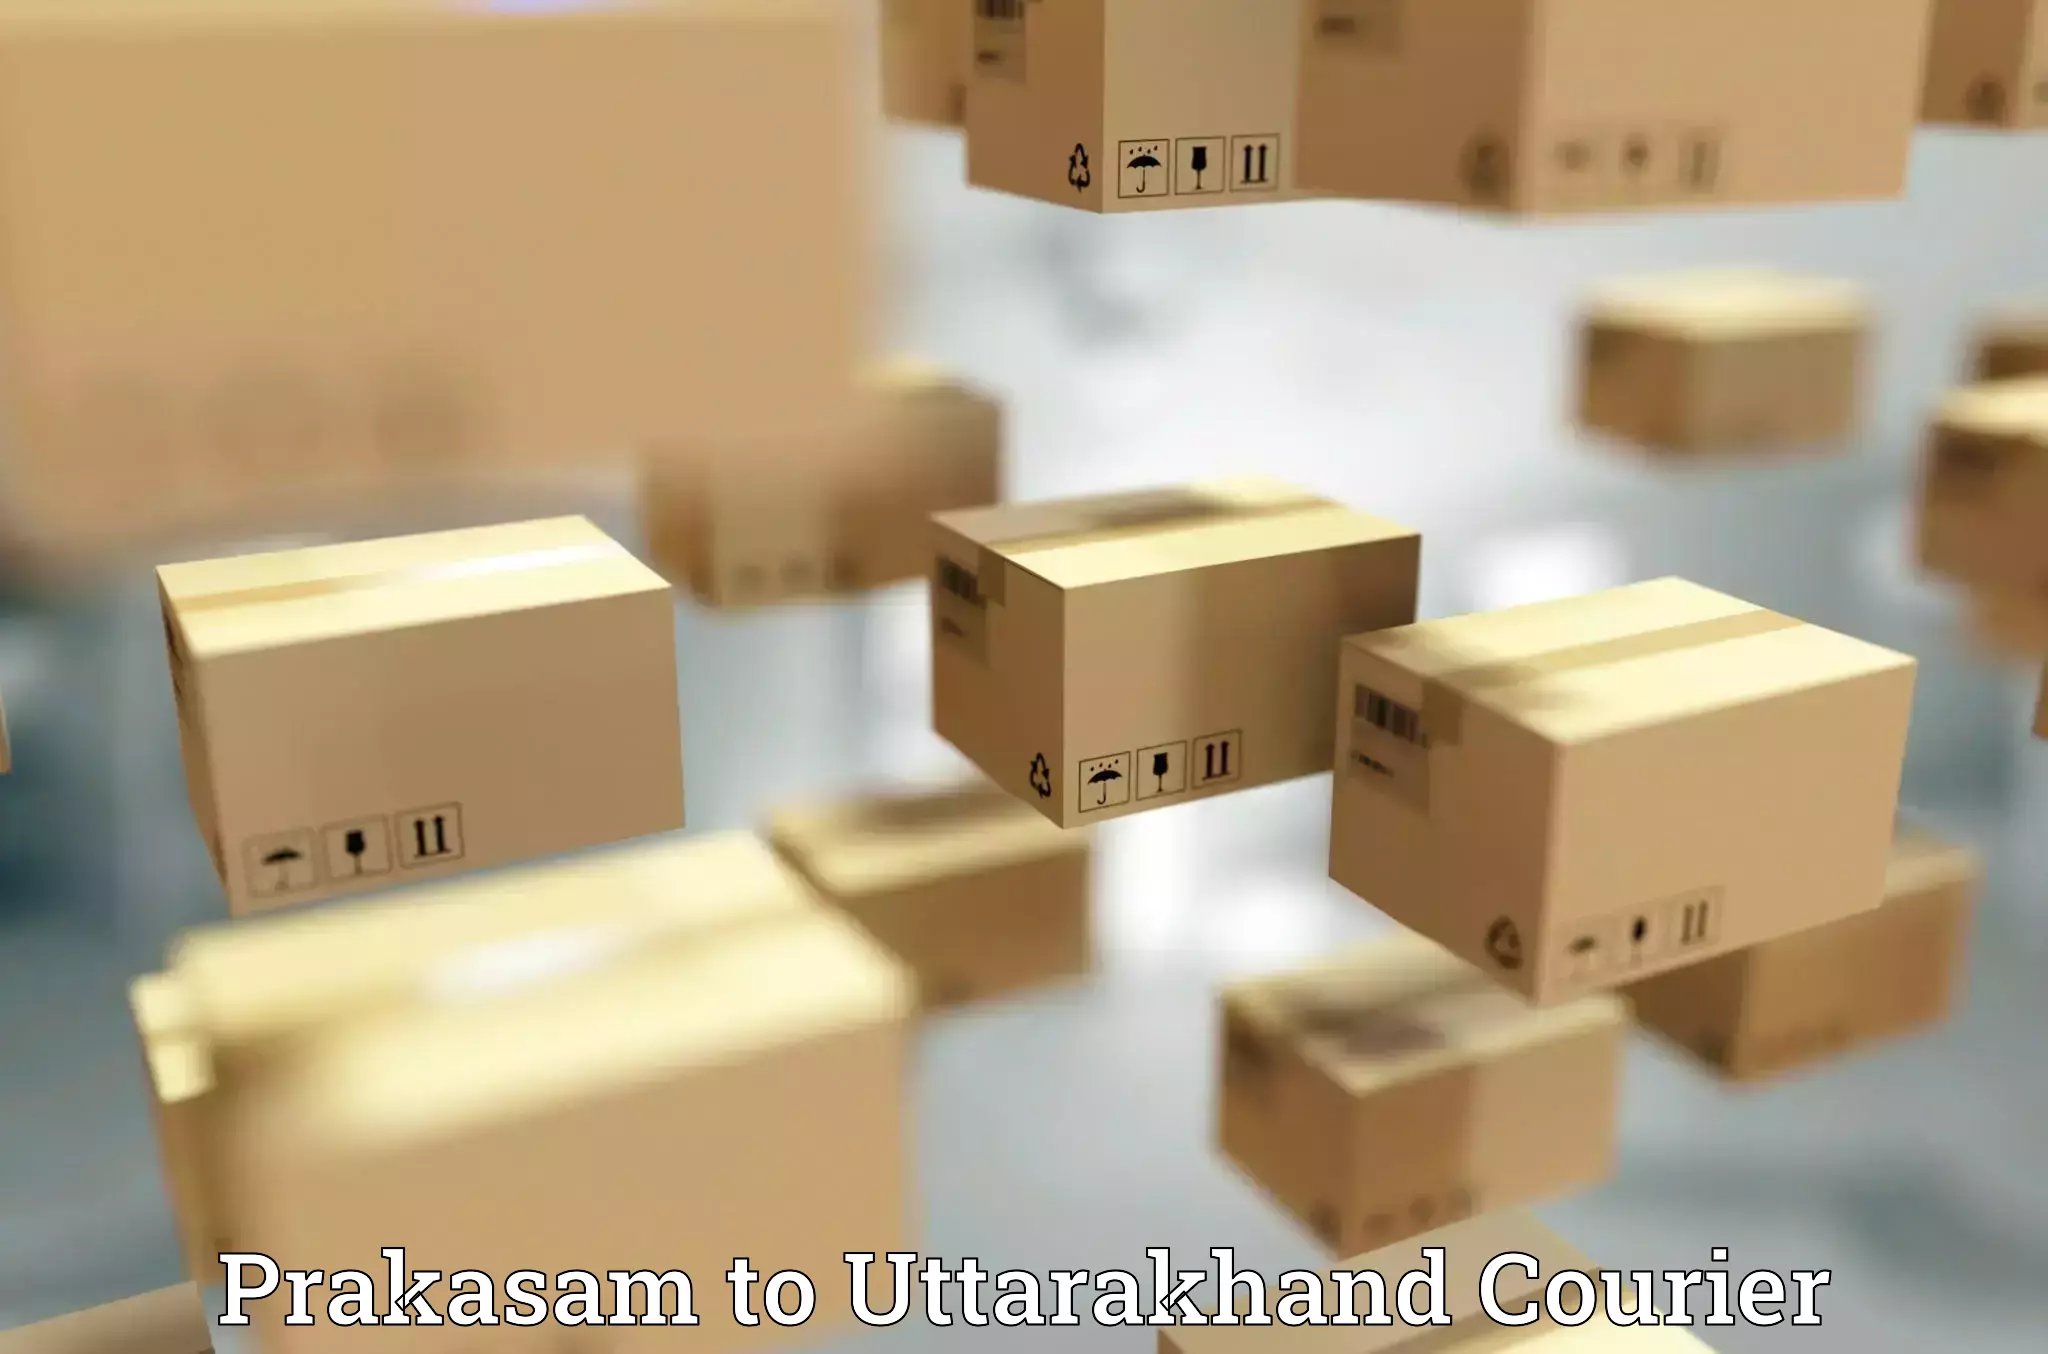 Luggage transport company Prakasam to Uttarakhand